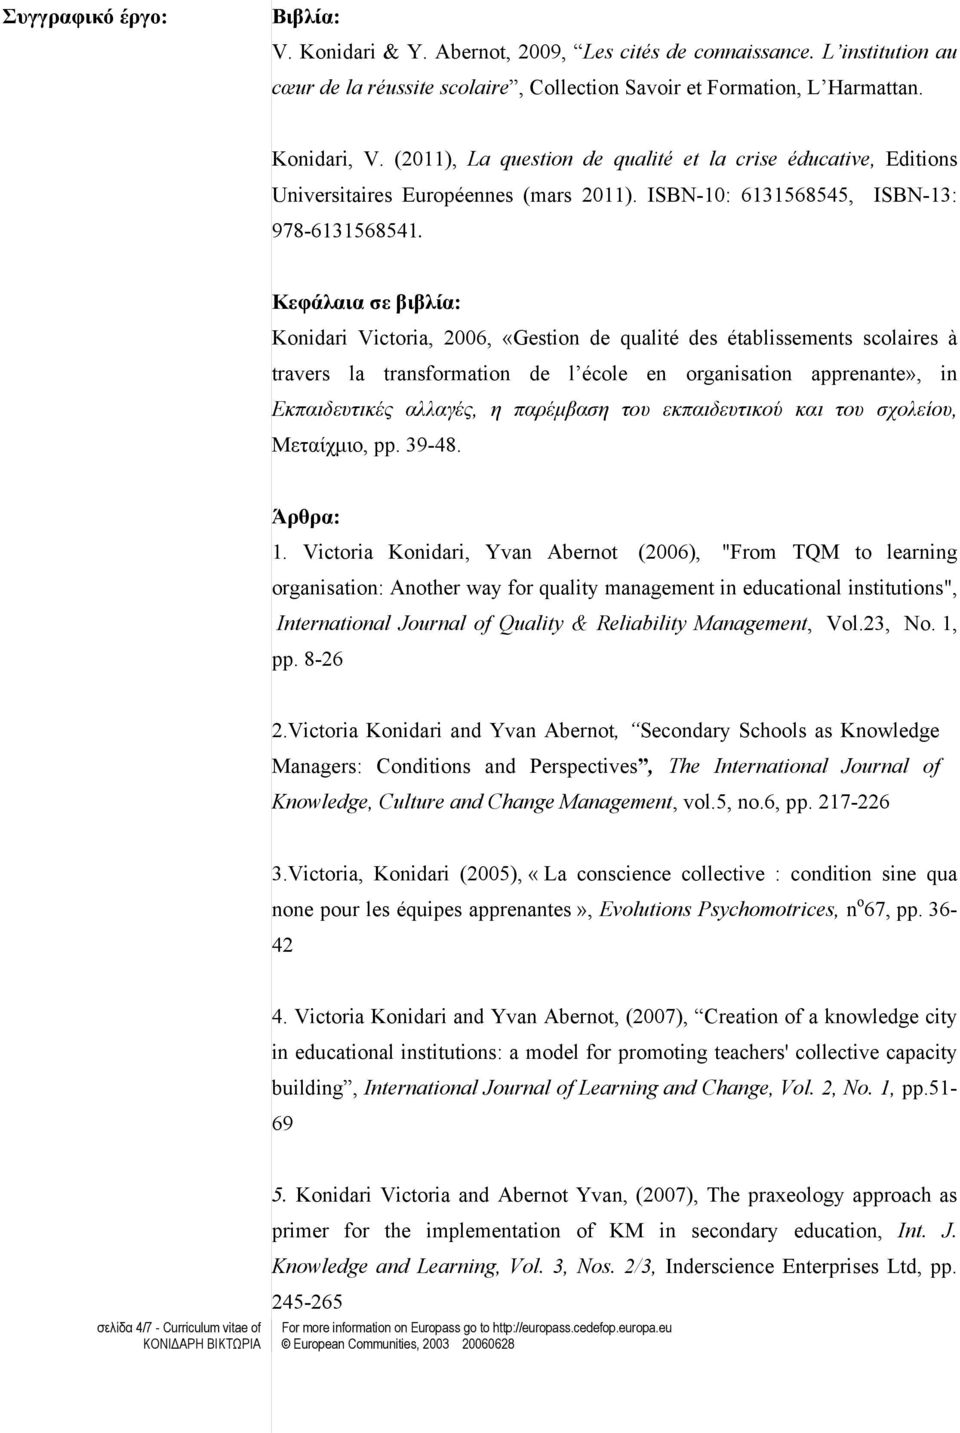 Κεφάλαια σε βιβλία: Konidari Victoria, 006, «Gestion de qualité des établissements scolaires à travers la transformation de l école en organisation apprenante», in Εκπαιδευτικές αλλαγές, η παρέμβαση